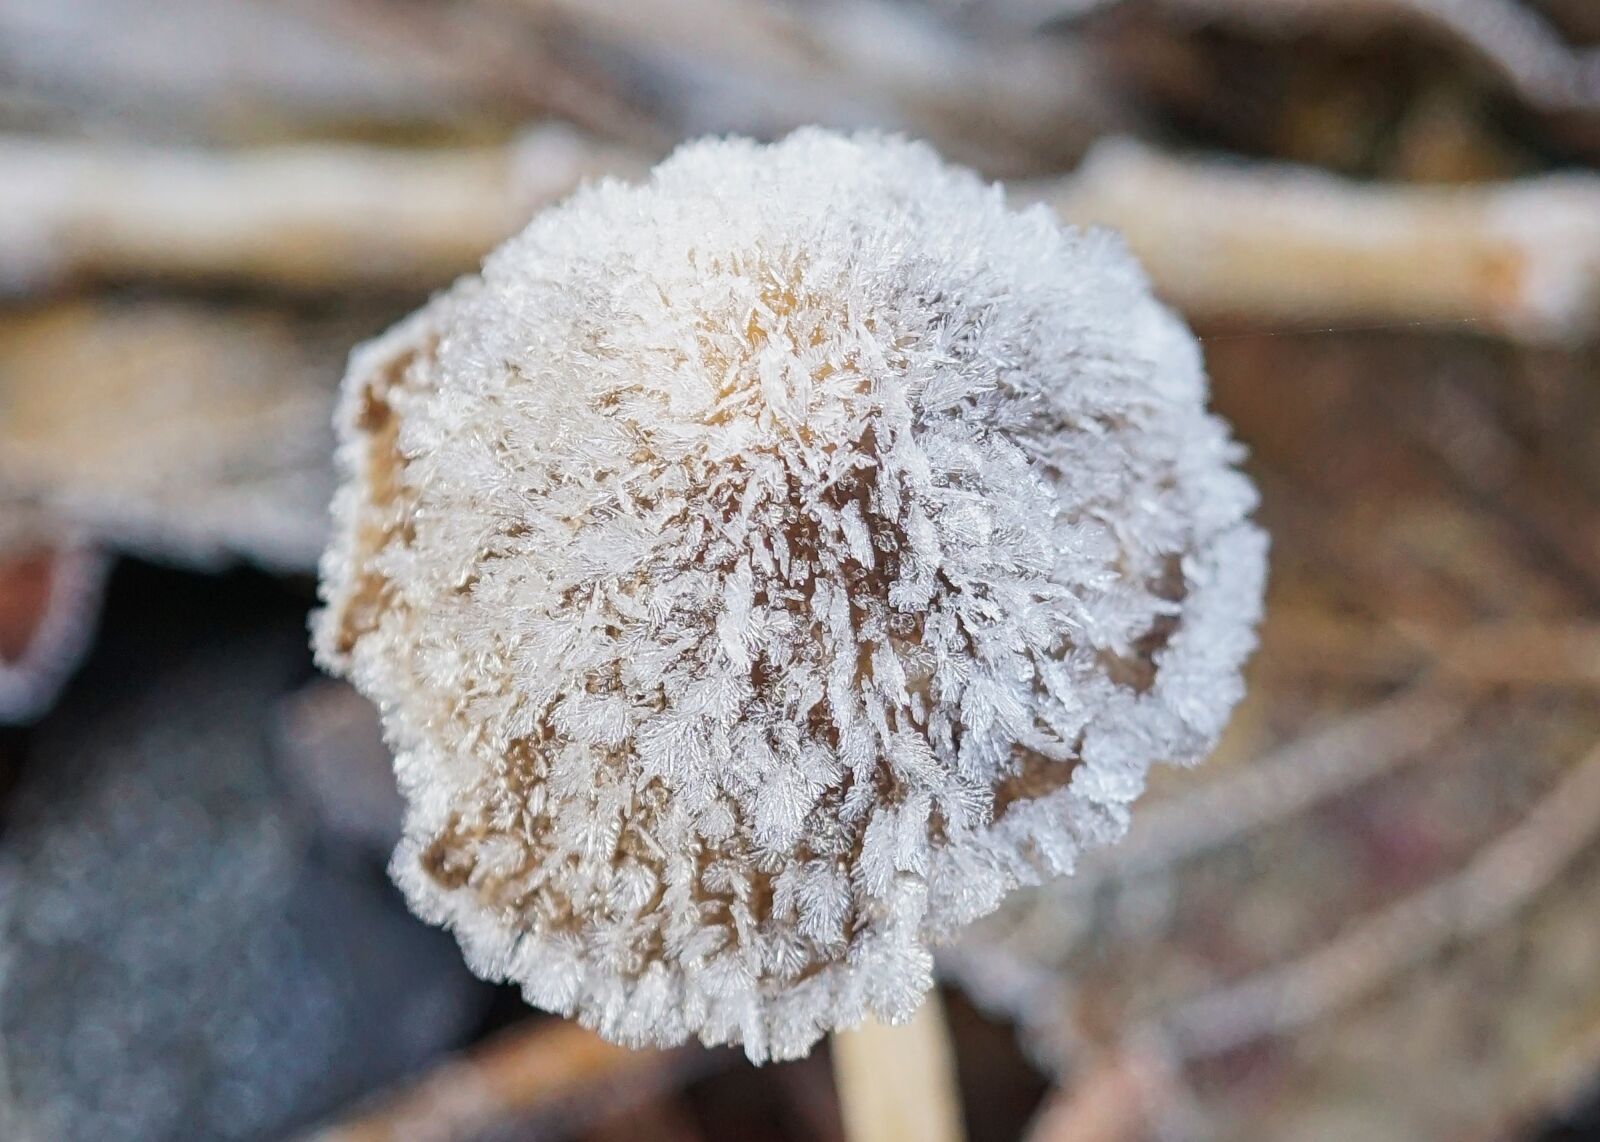 Sony a5100 + Sony E 30mm F3.5 Macro sample photo. Mushroom, frozen mushroom, icy photography